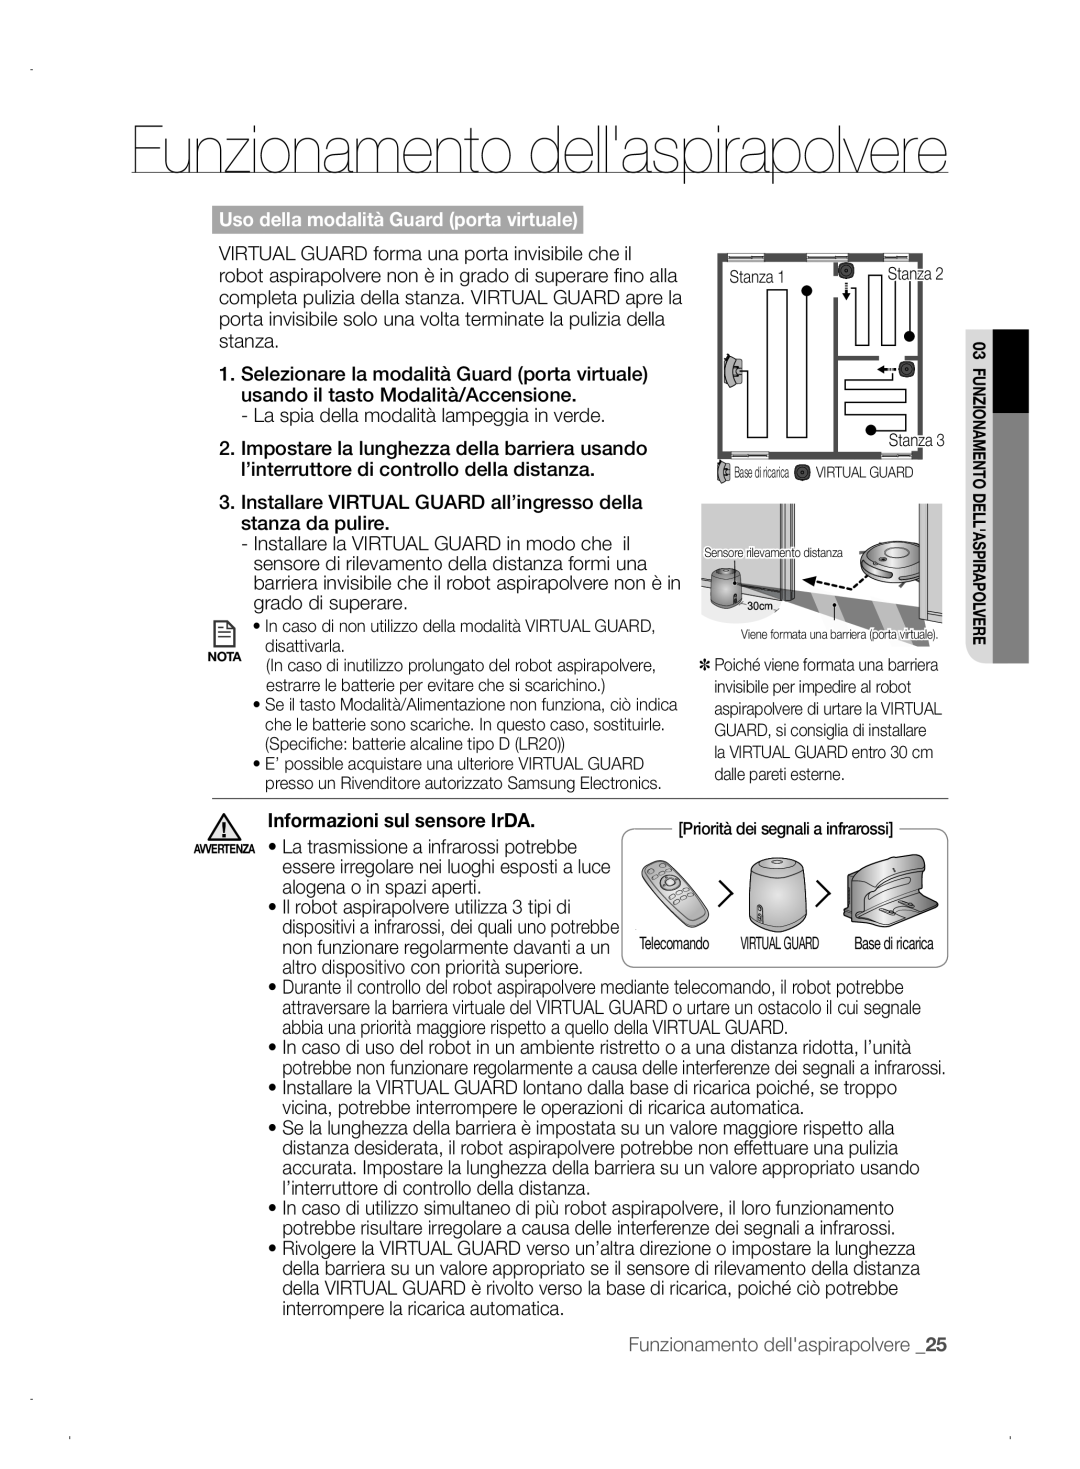 Samsung VCR8845T3A/XEF, VCR8845T3A/XET manual Funzionamento dellaspirapolvere, Uso della modalità Guard porta virtuale 